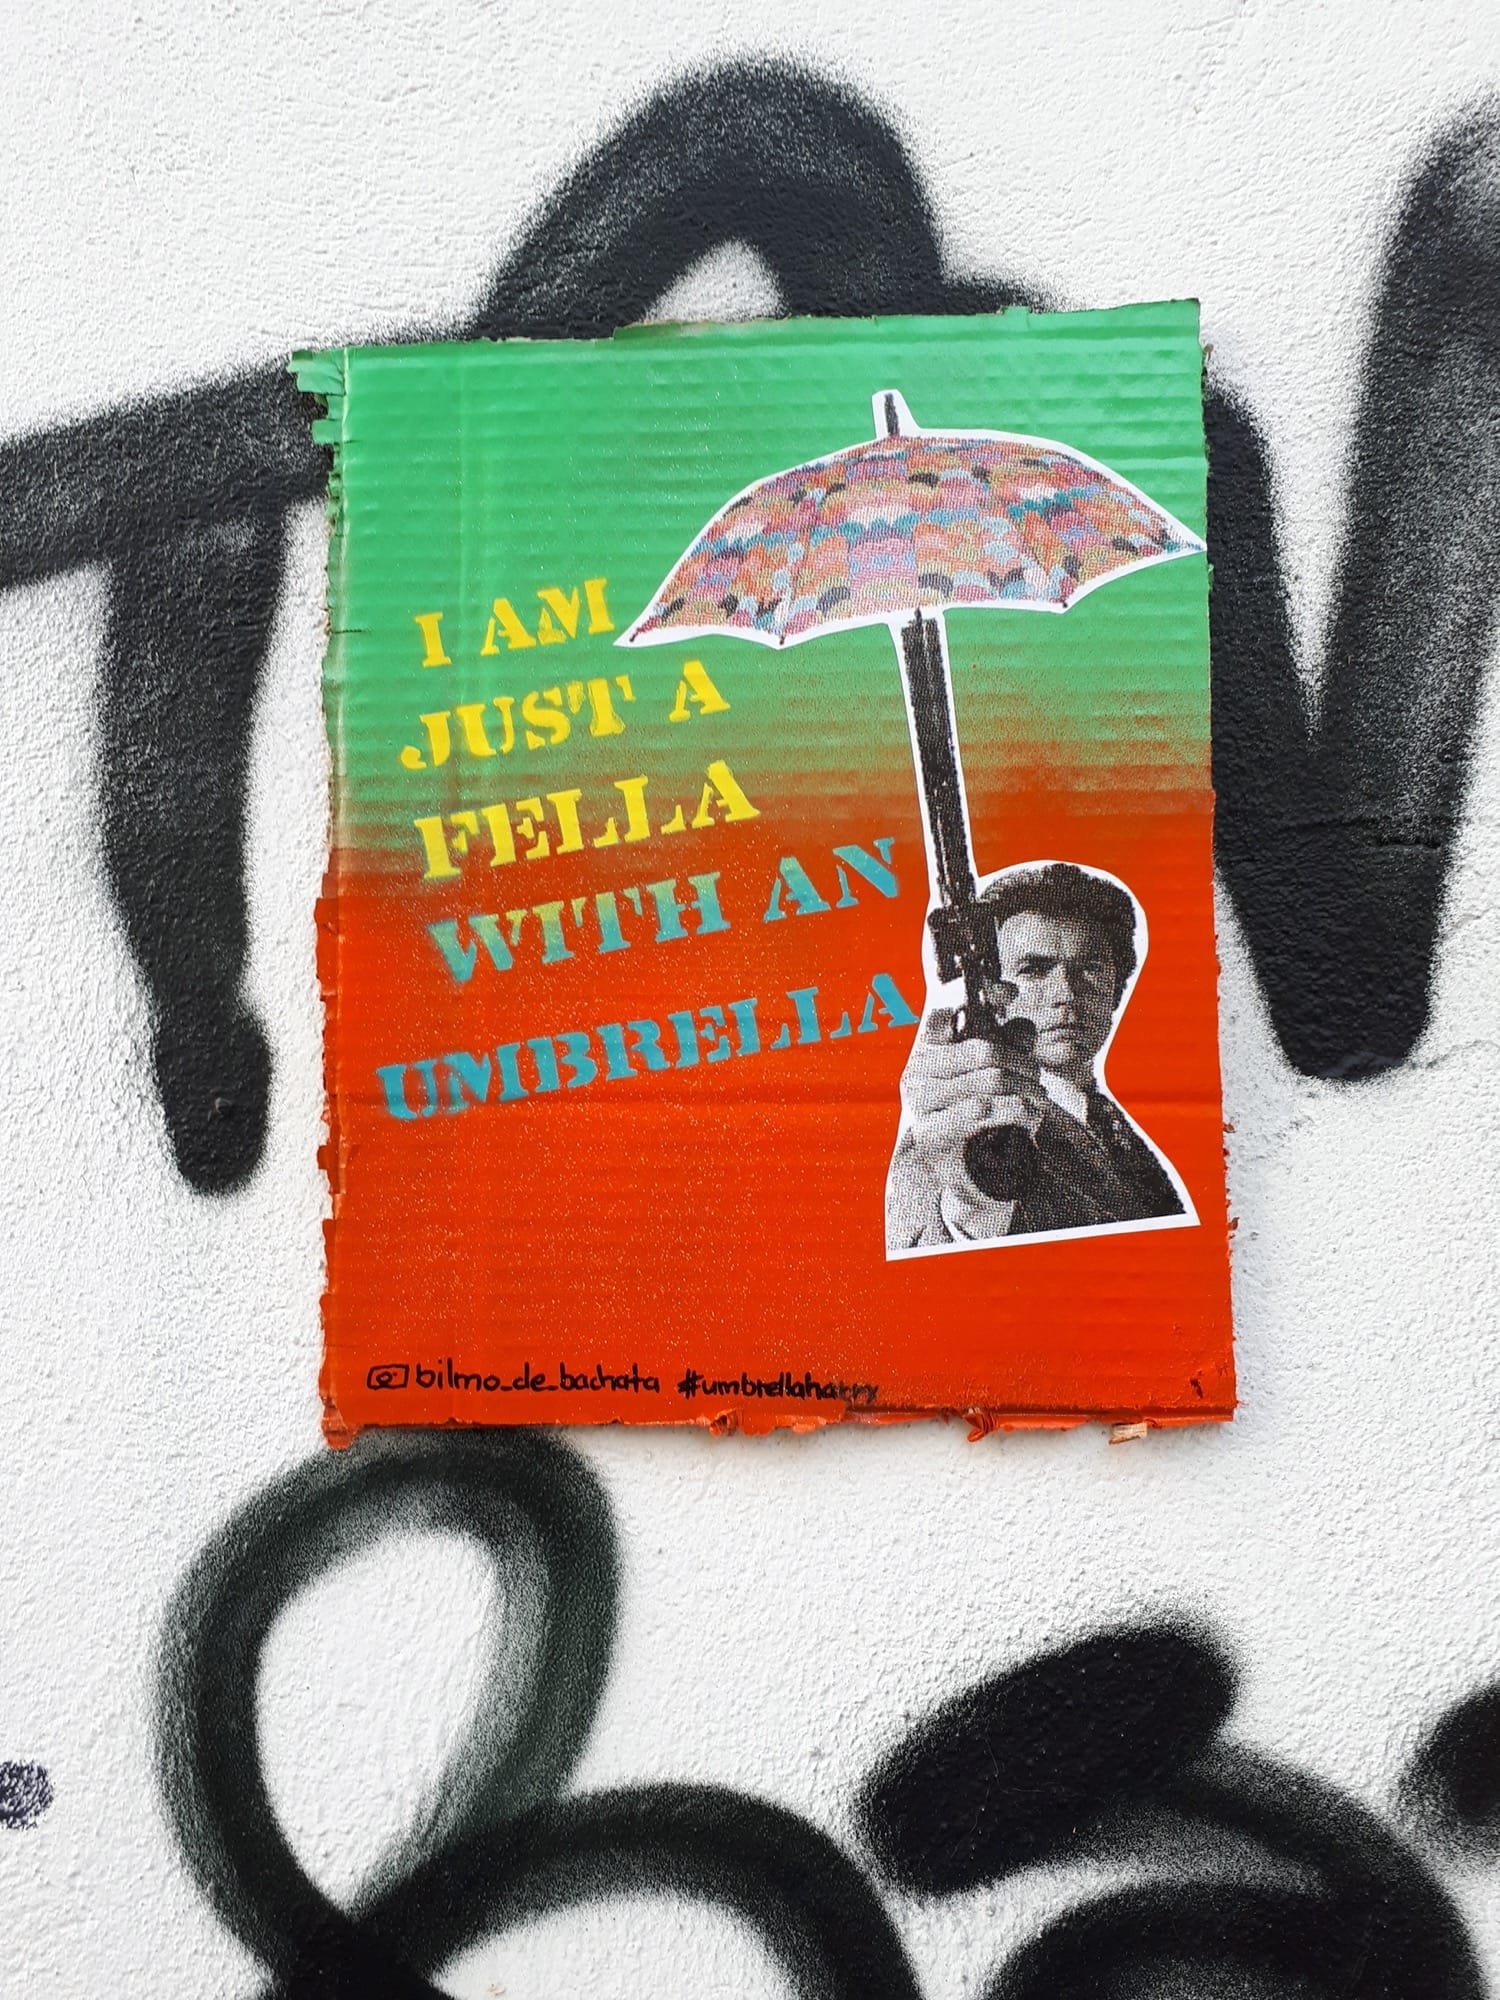 Graffiti 1911 Fella with an umbrella de Bilmo capturé par Bilmo à Köln Germany